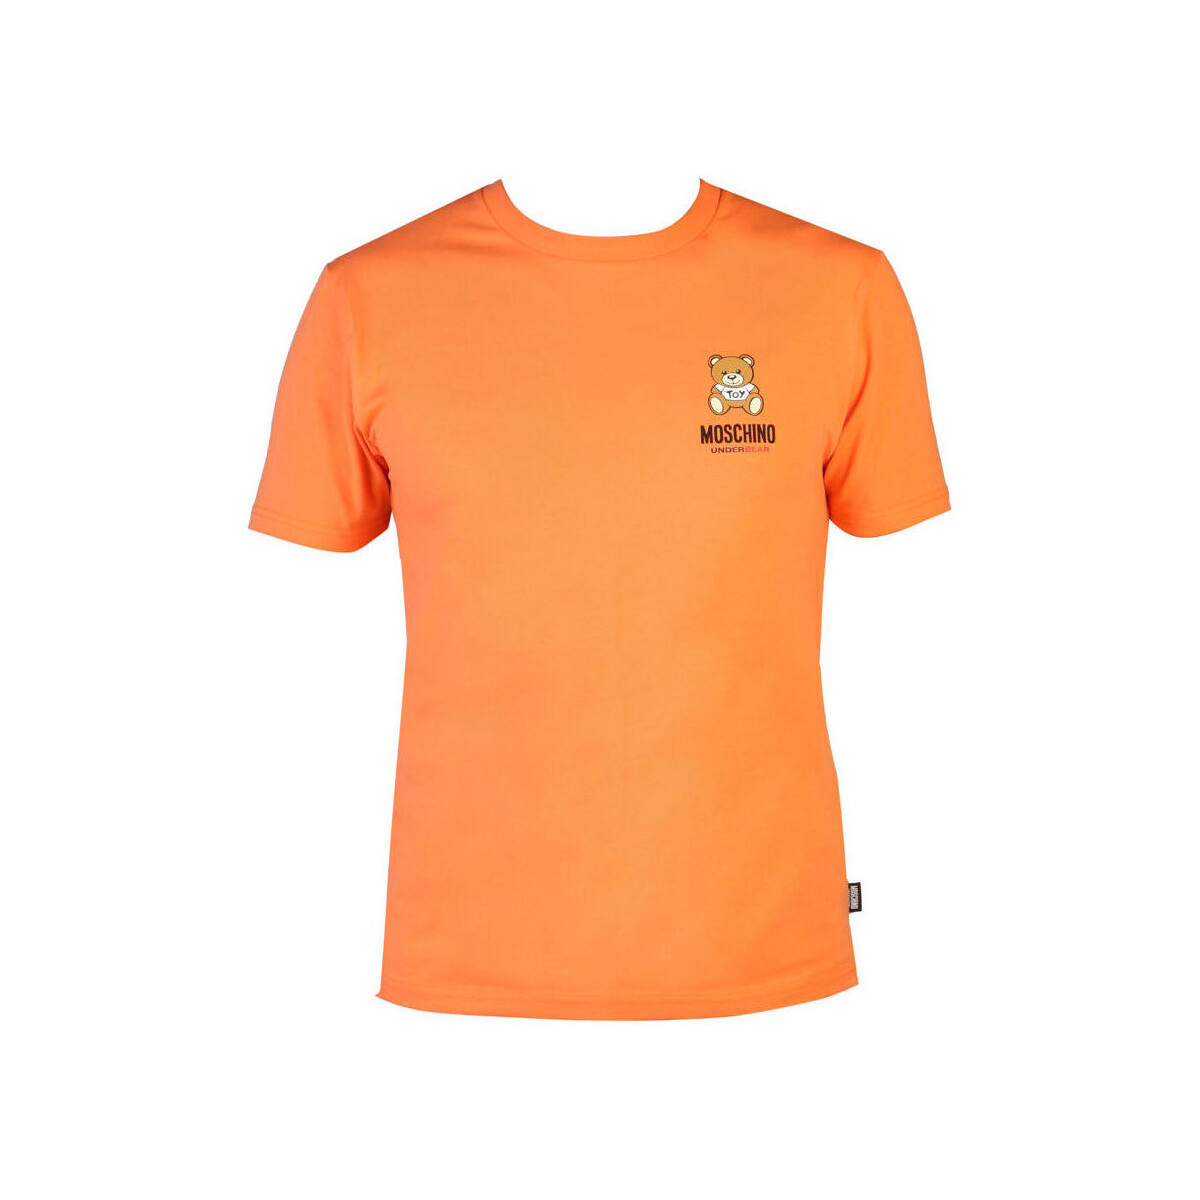 tekstylia Męskie T-shirty z krótkim rękawem Moschino - A0784-4410M Pomarańczowy